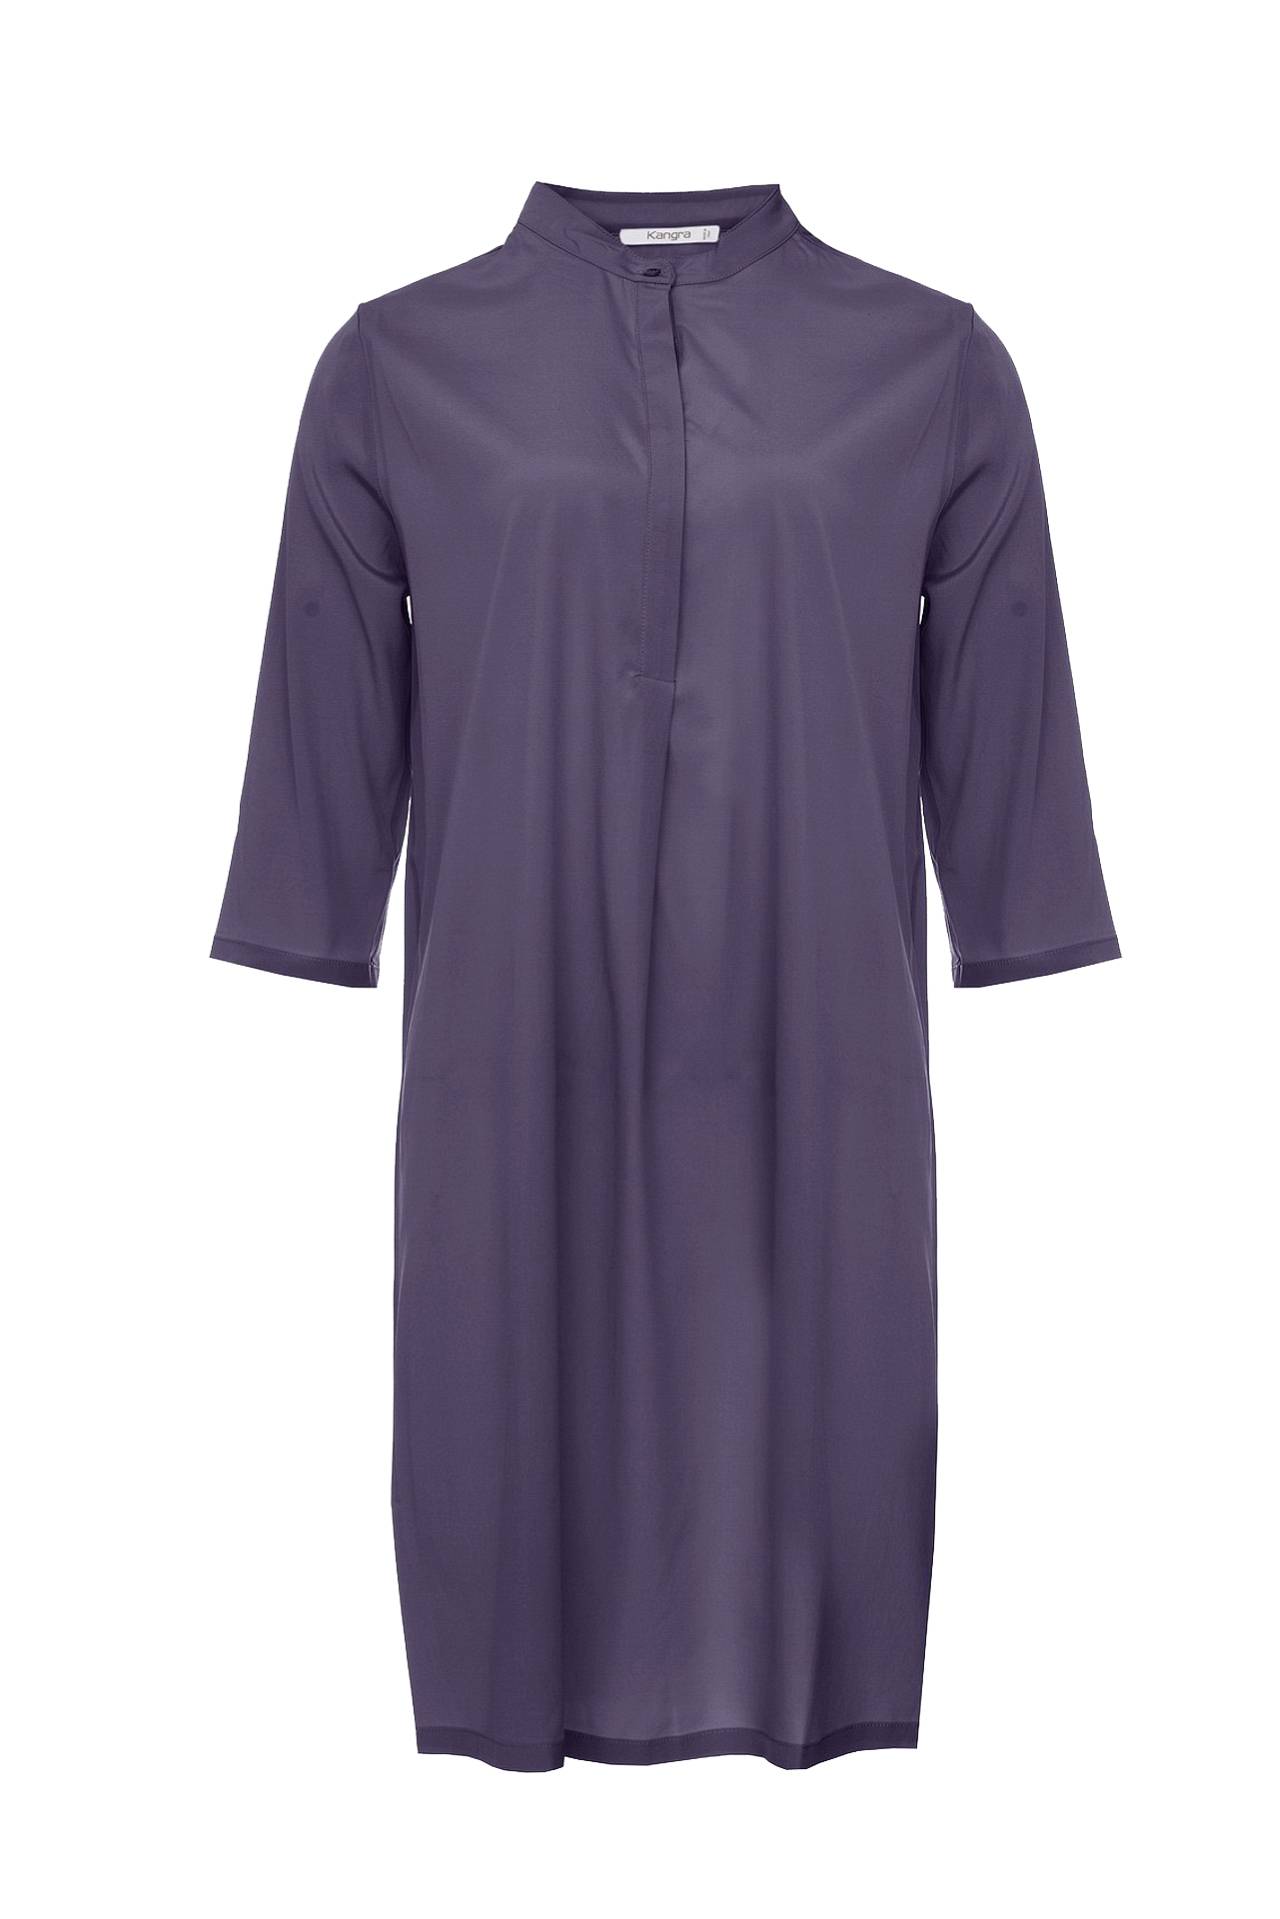 Одежда женская Платье KANGRA (9920/16.1). Купить за 12450 руб.